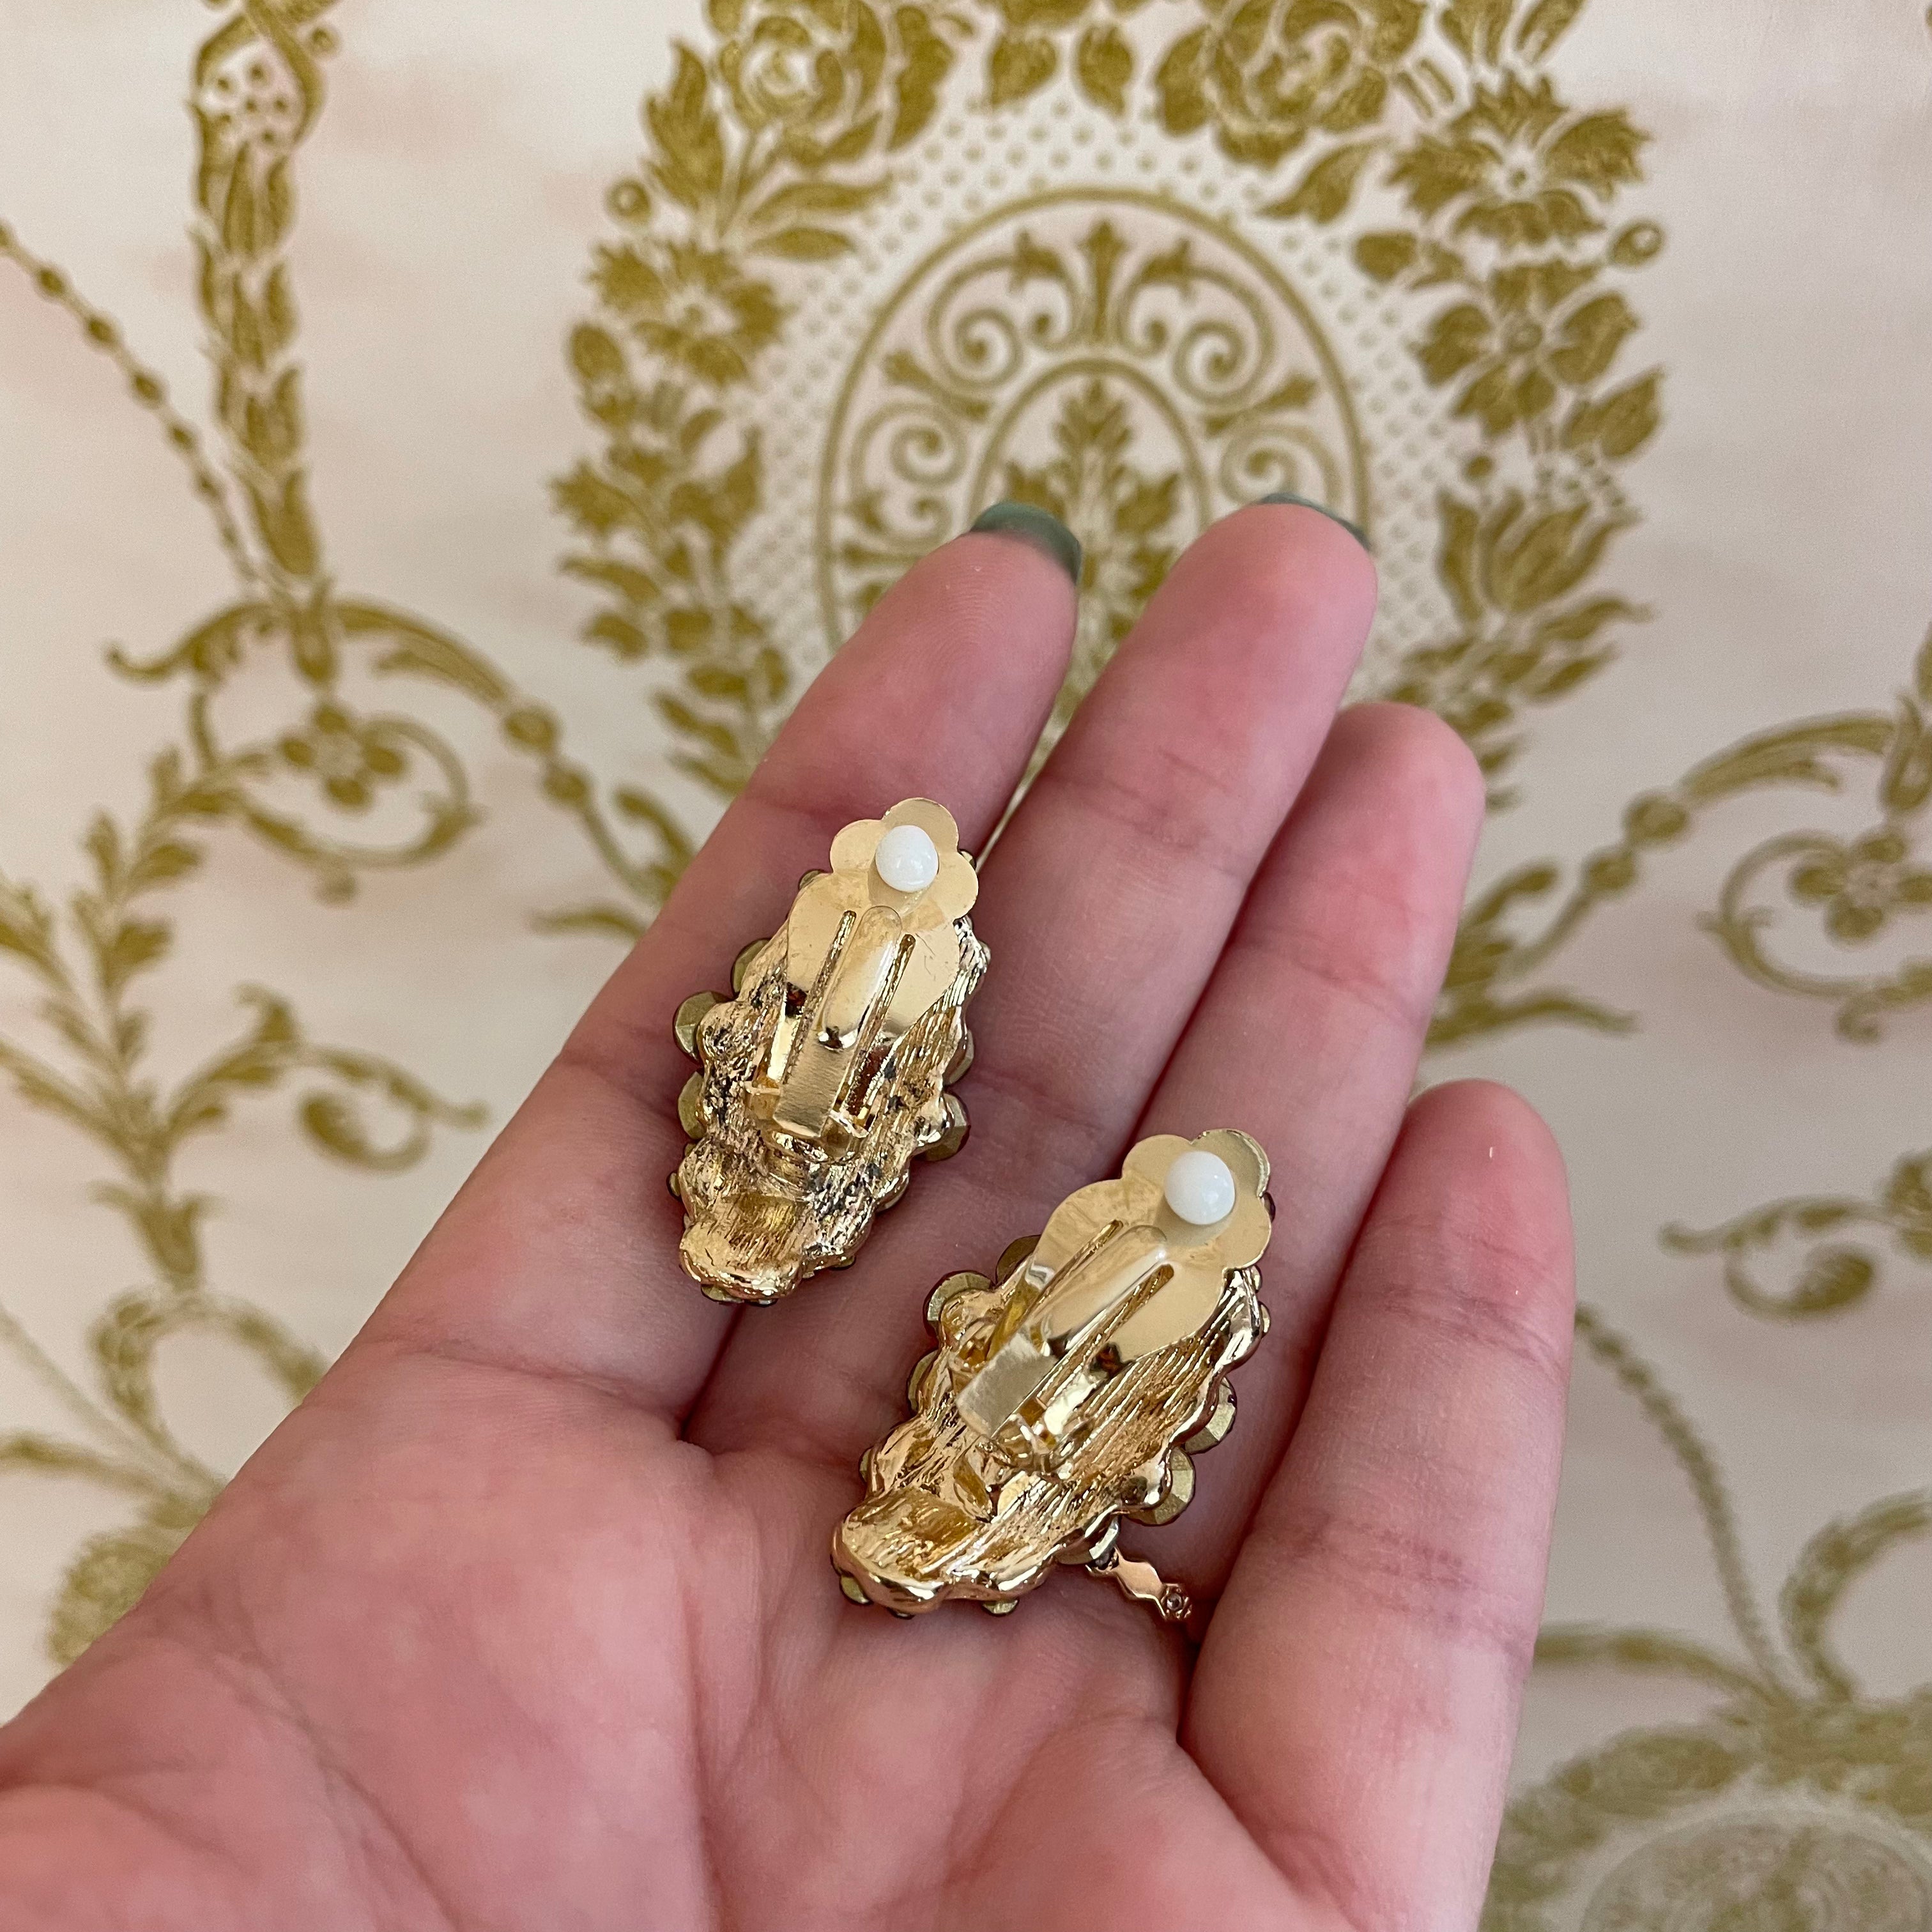 Fuchsia rhinestone clips earrings